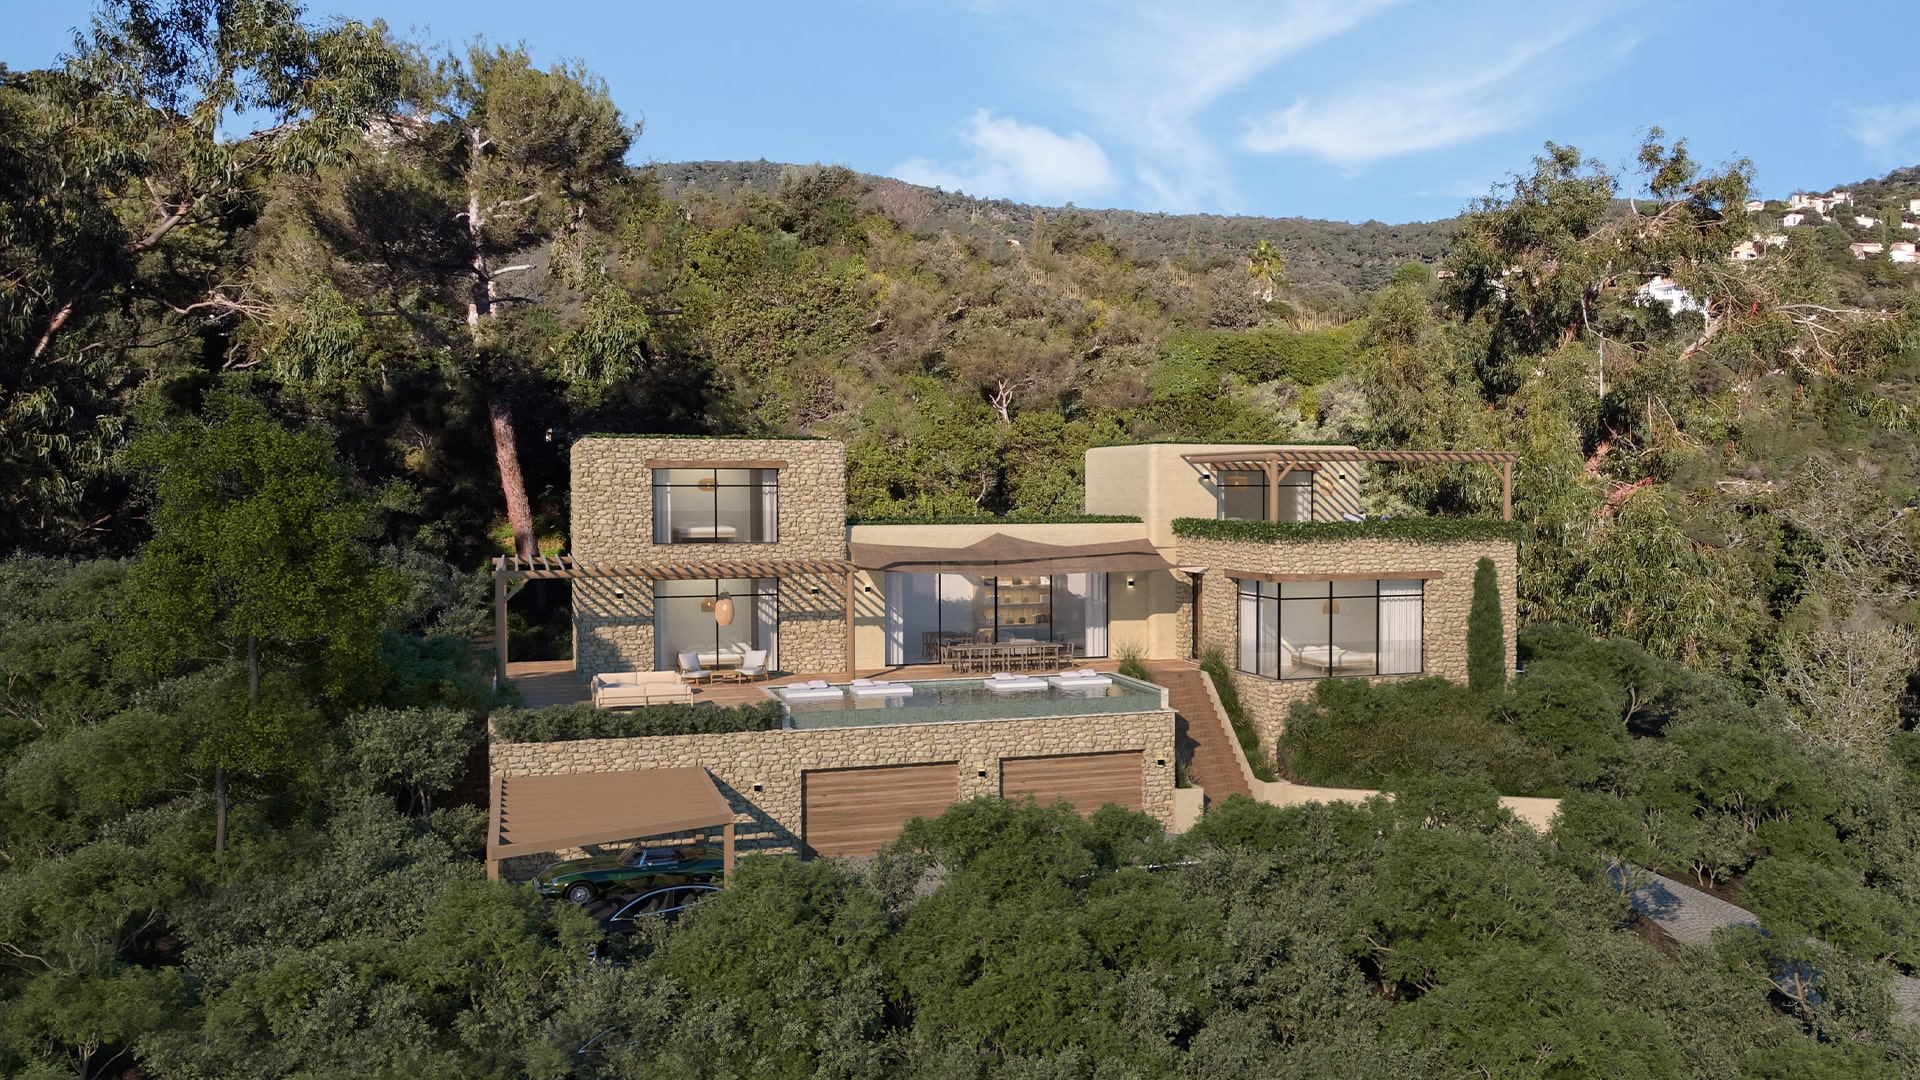 Agence Boris Folli - Architecture and project management - Saint-Tropez - Villa project